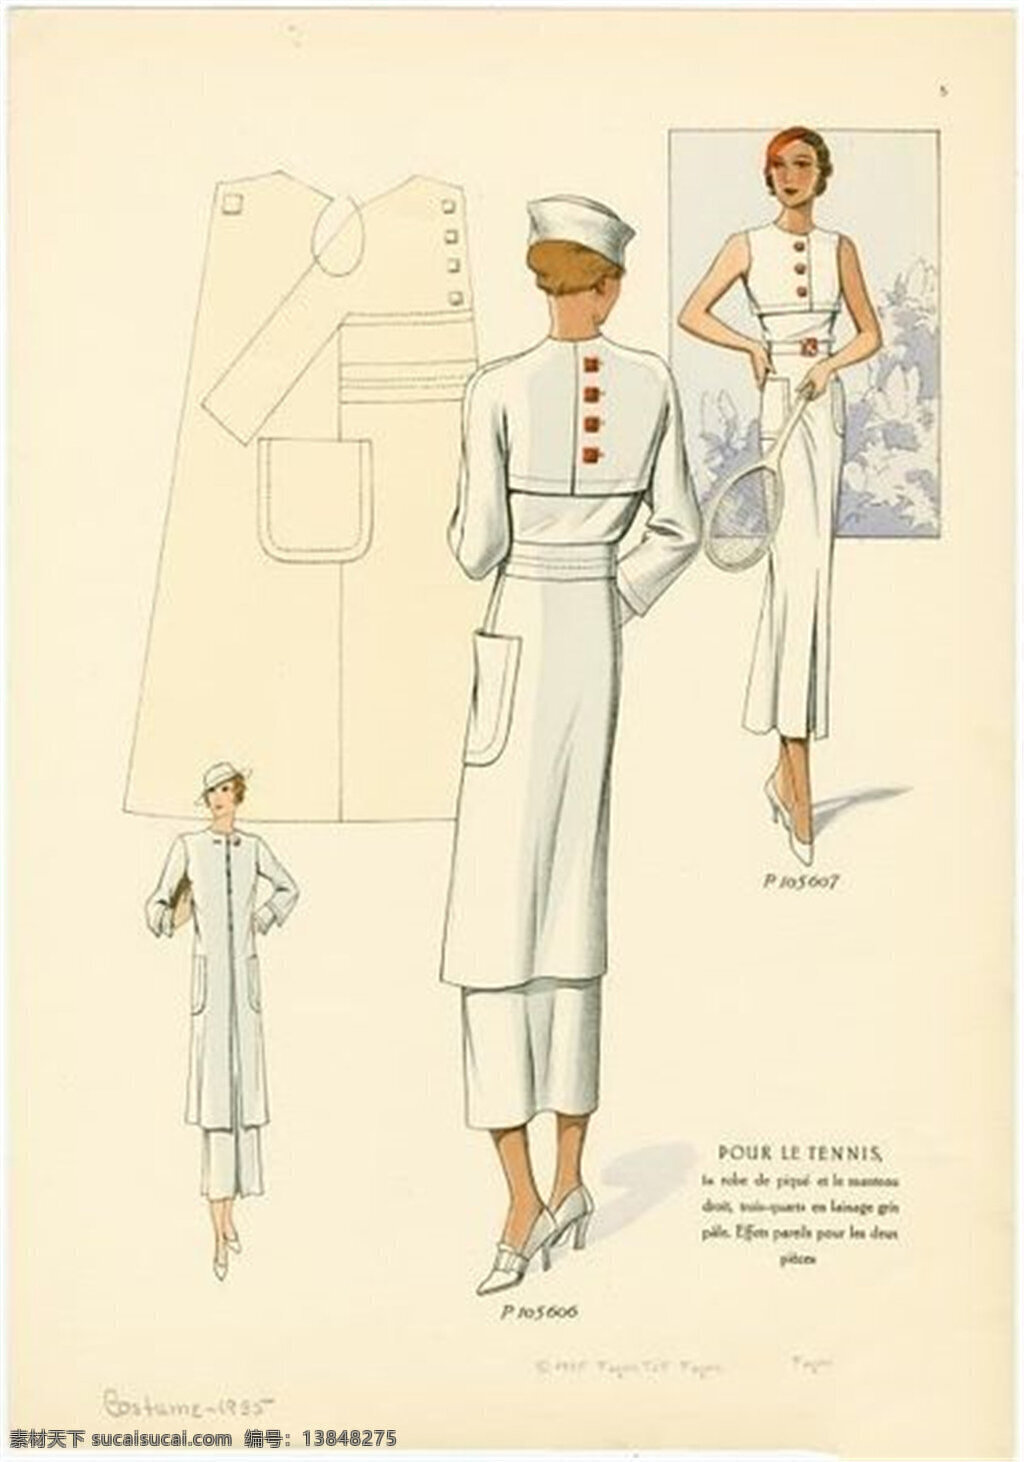 欧式 时尚 白色 长裙 设计图 服装设计 时尚女装 职业女装 女装设计 效果图 服装 服装效果图 连衣裙 欧洲女装 欧式时装 套装